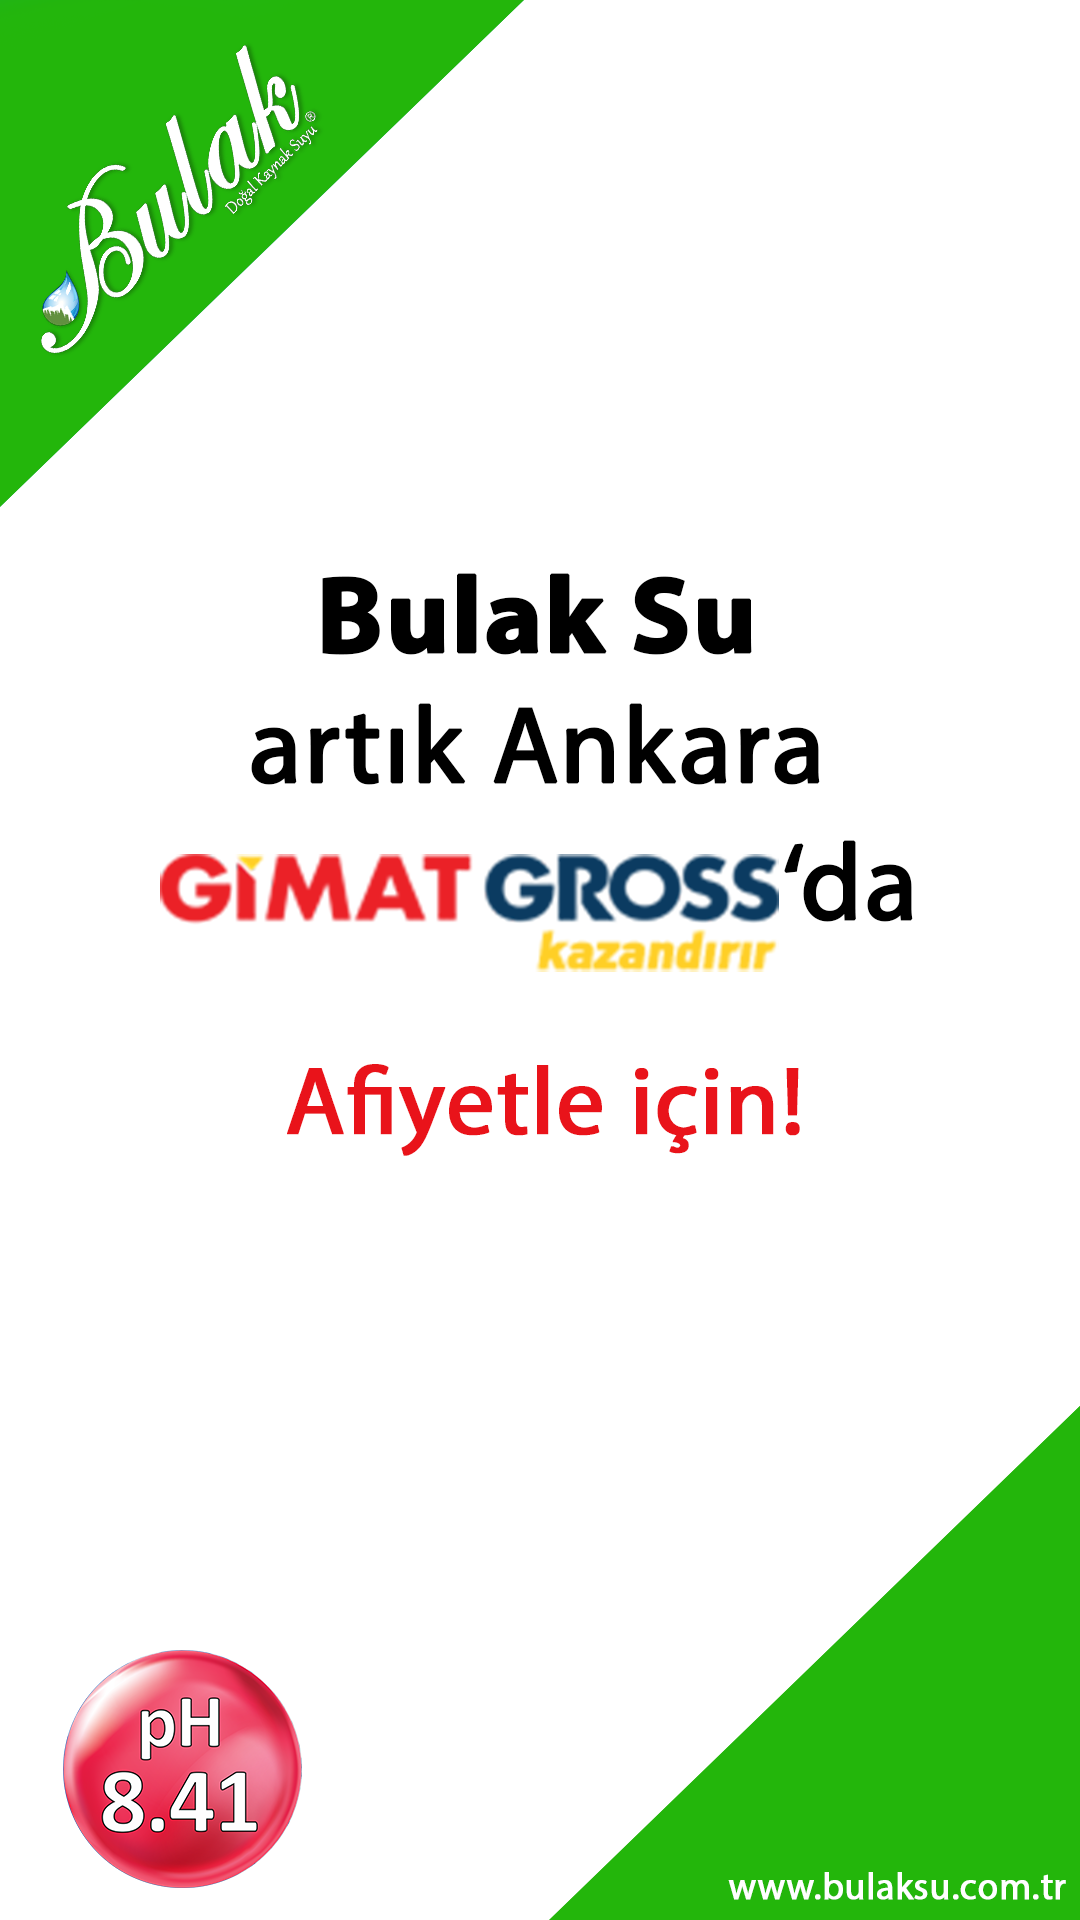 Bulak Su artık Ankara Gimat Gross marketde